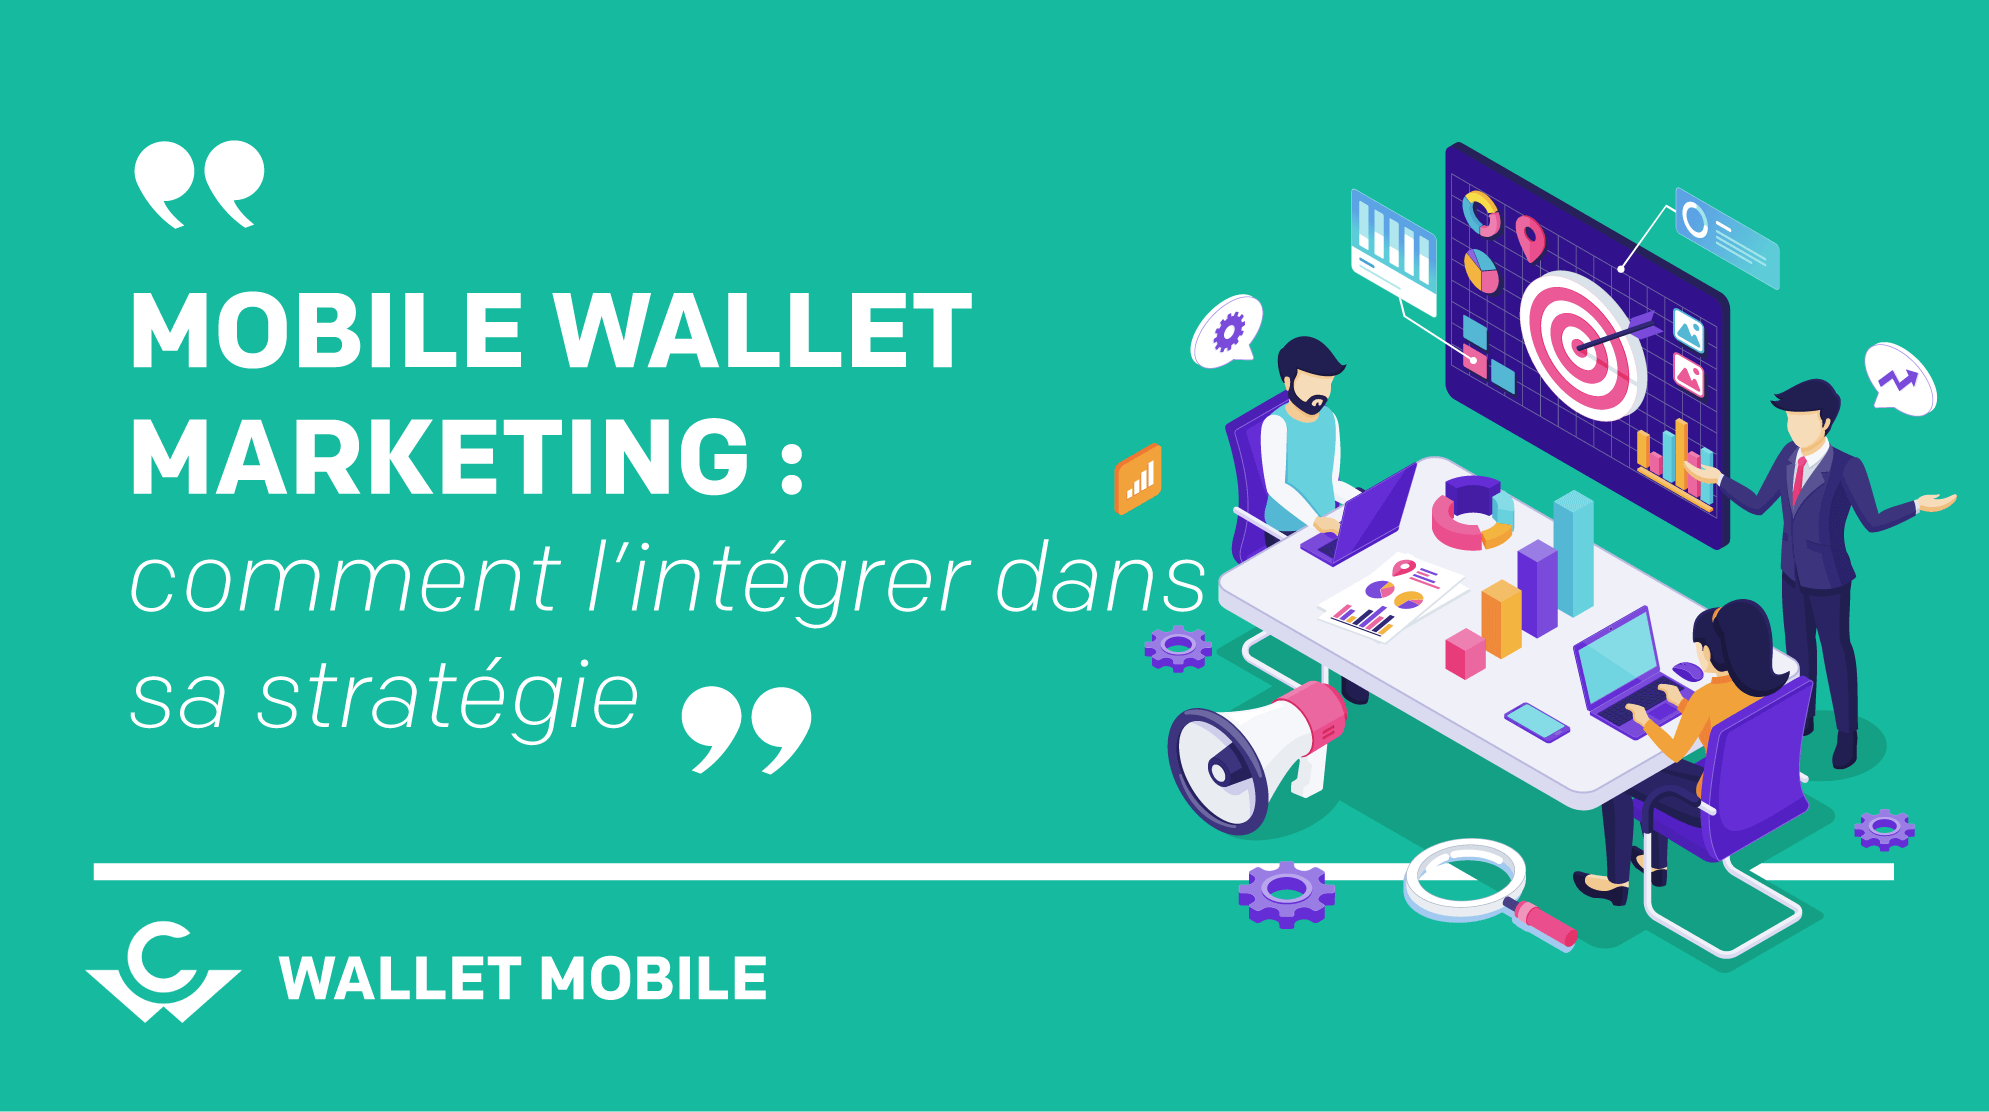 Mobile wallet marketing : comment l'intégrer dans sa stratégie ?